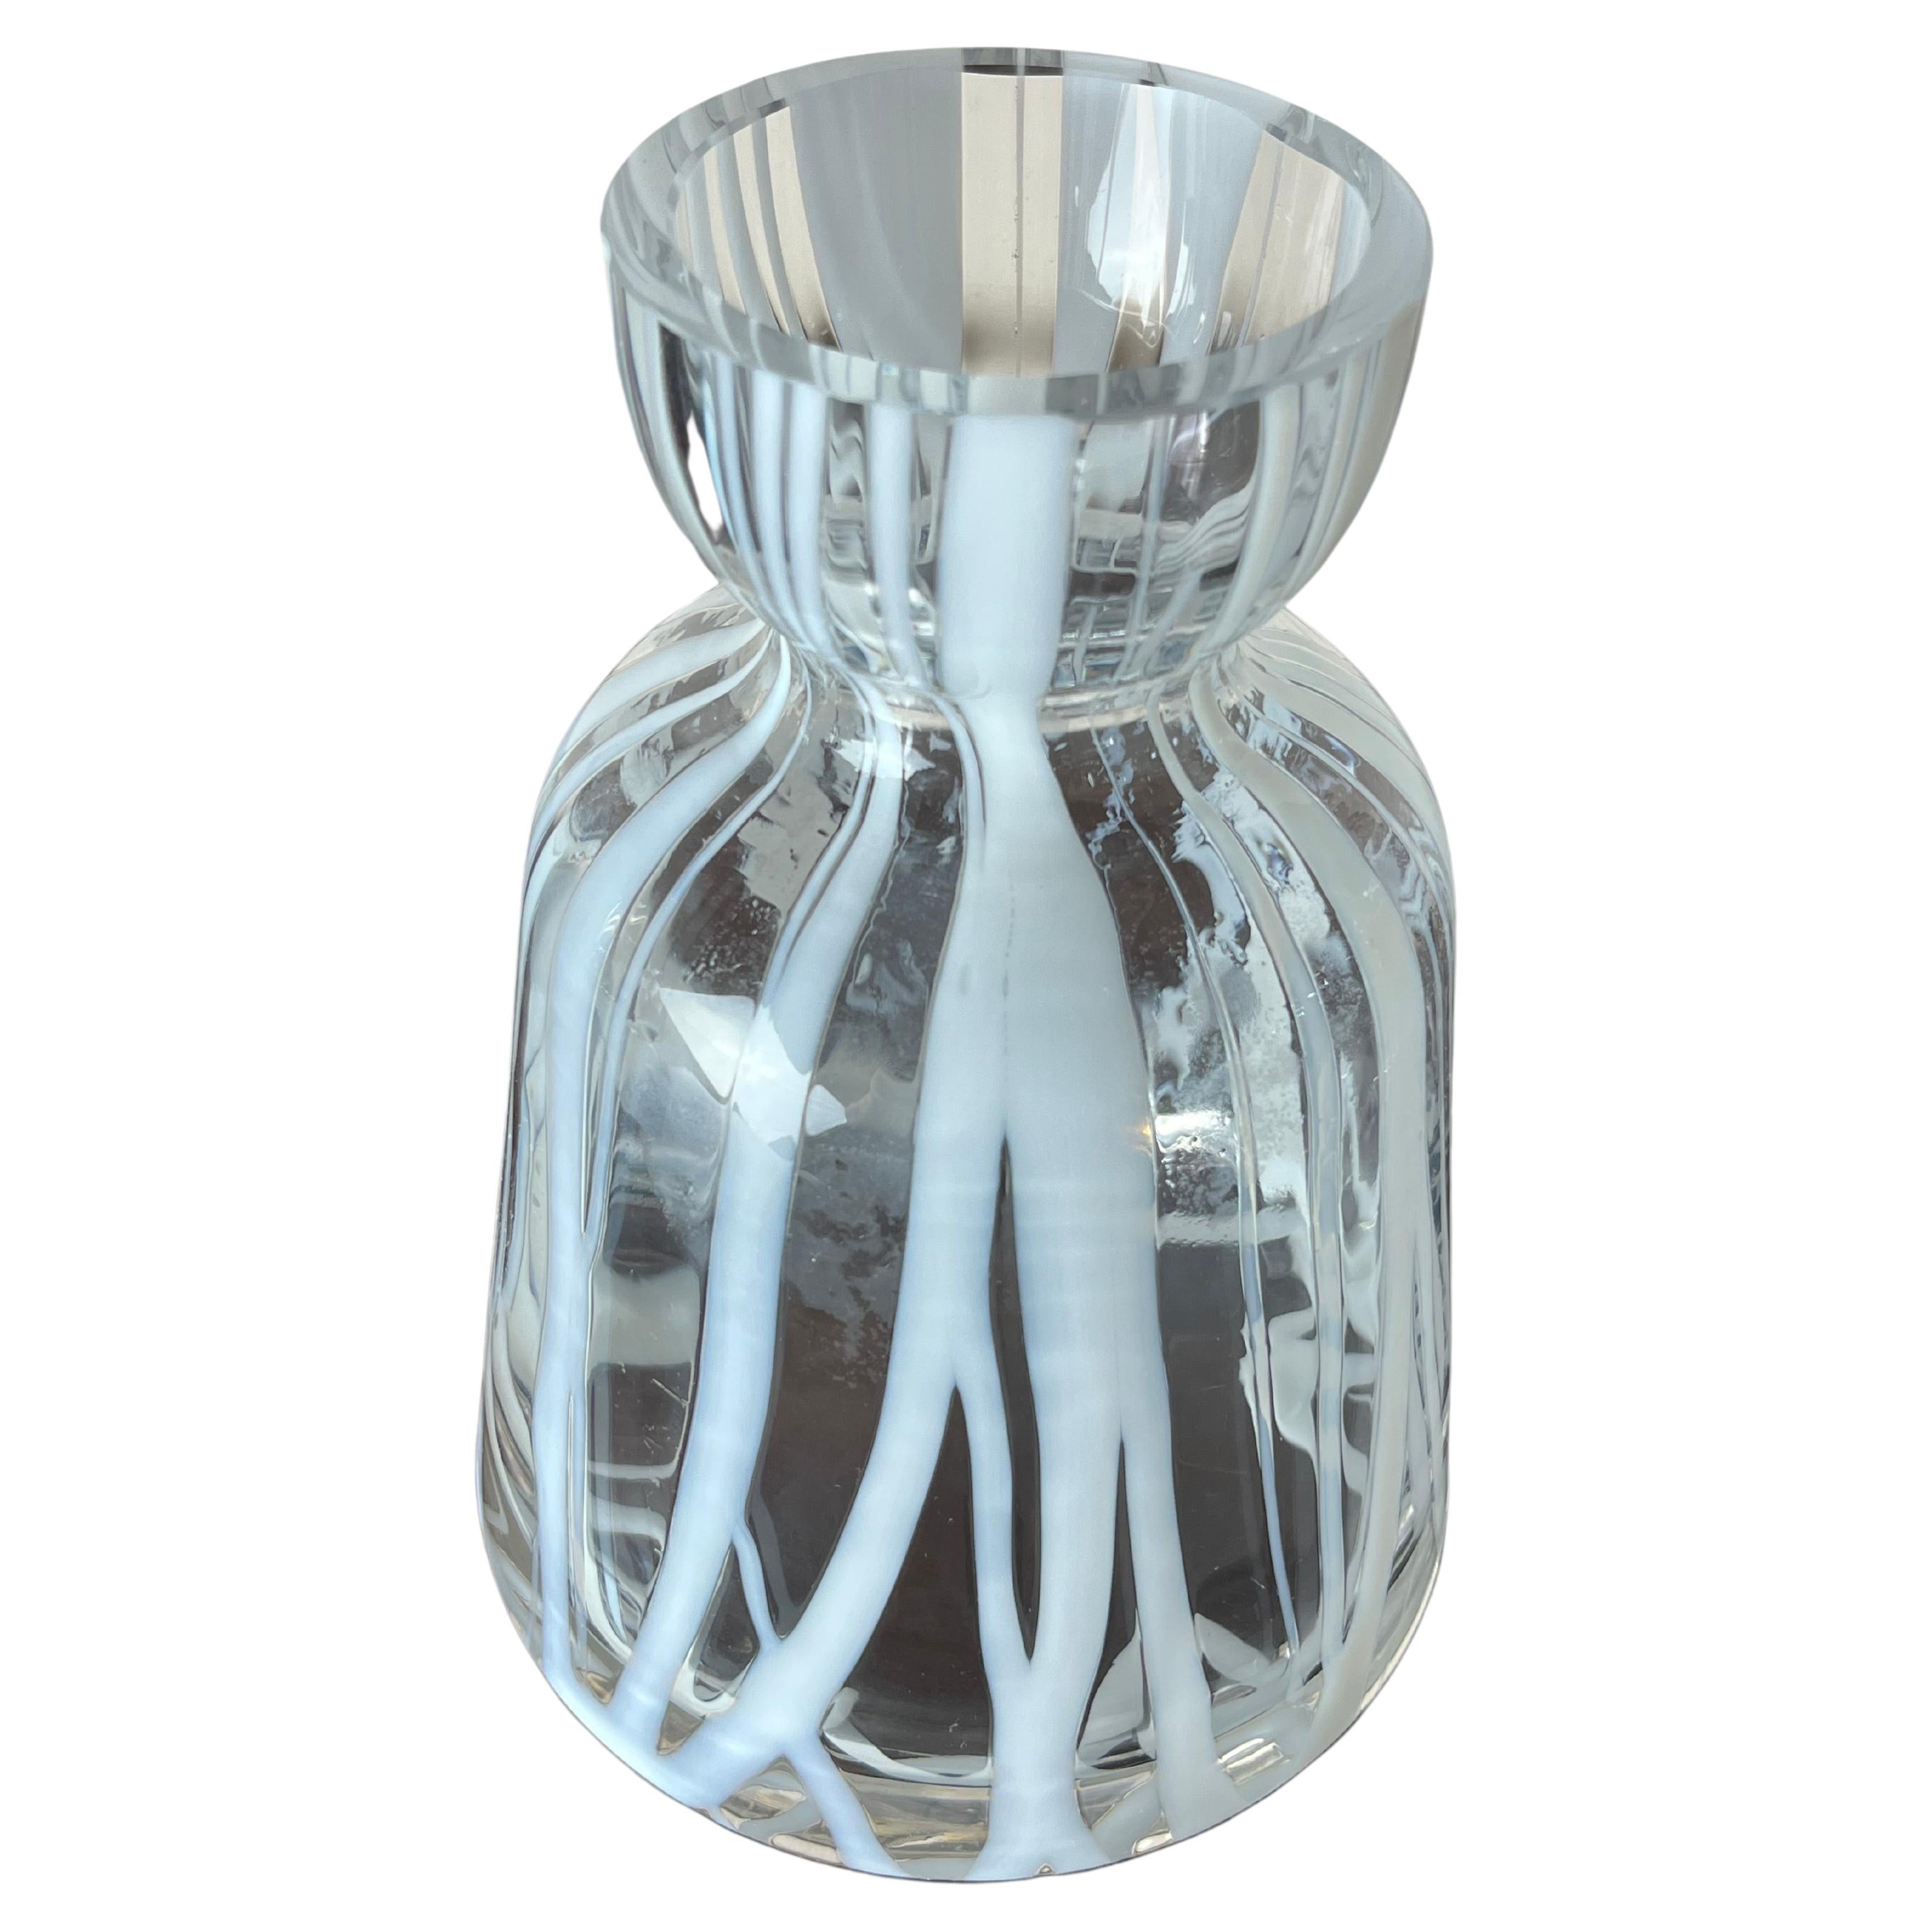 Vase aus Murano-Glas, Italien, 1960er Jahre
Gefunden in einer noblen Wohnung. Es ist intakt und in gutem Zustand. Sie können kleine Luftblasen im Inneren des Glases beobachten. Dies bescheinigt die Echtheit eines handwerklich hergestellten Produkts,